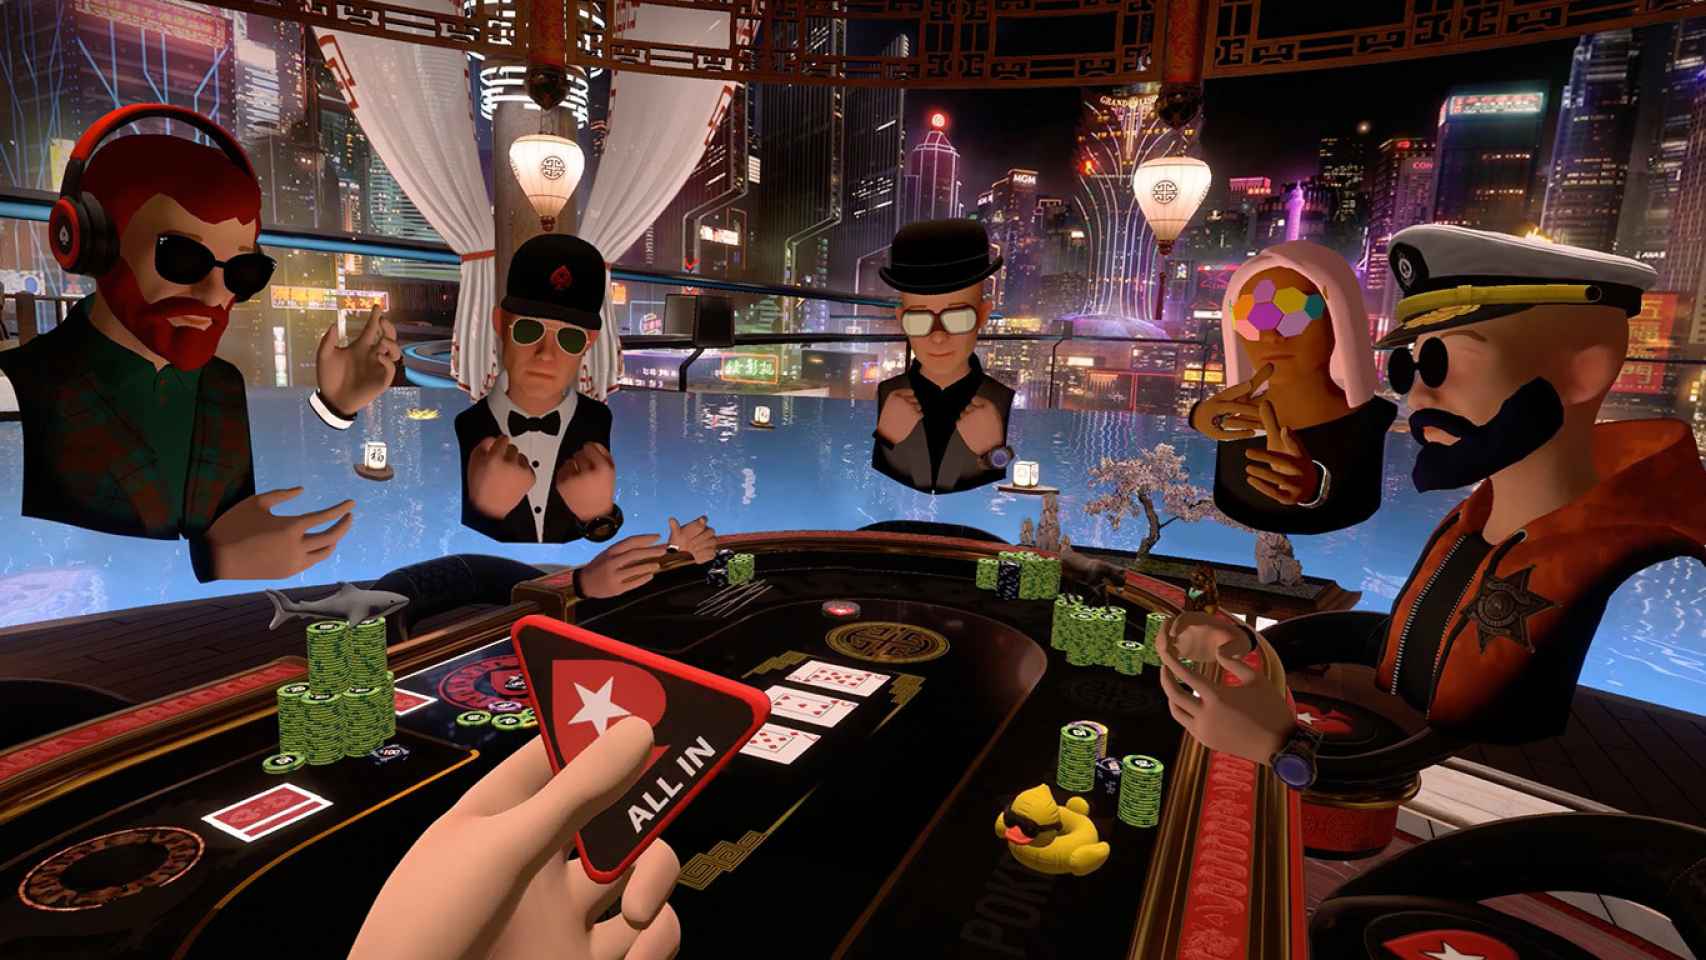 Realidad virtual en casinos digitales en español